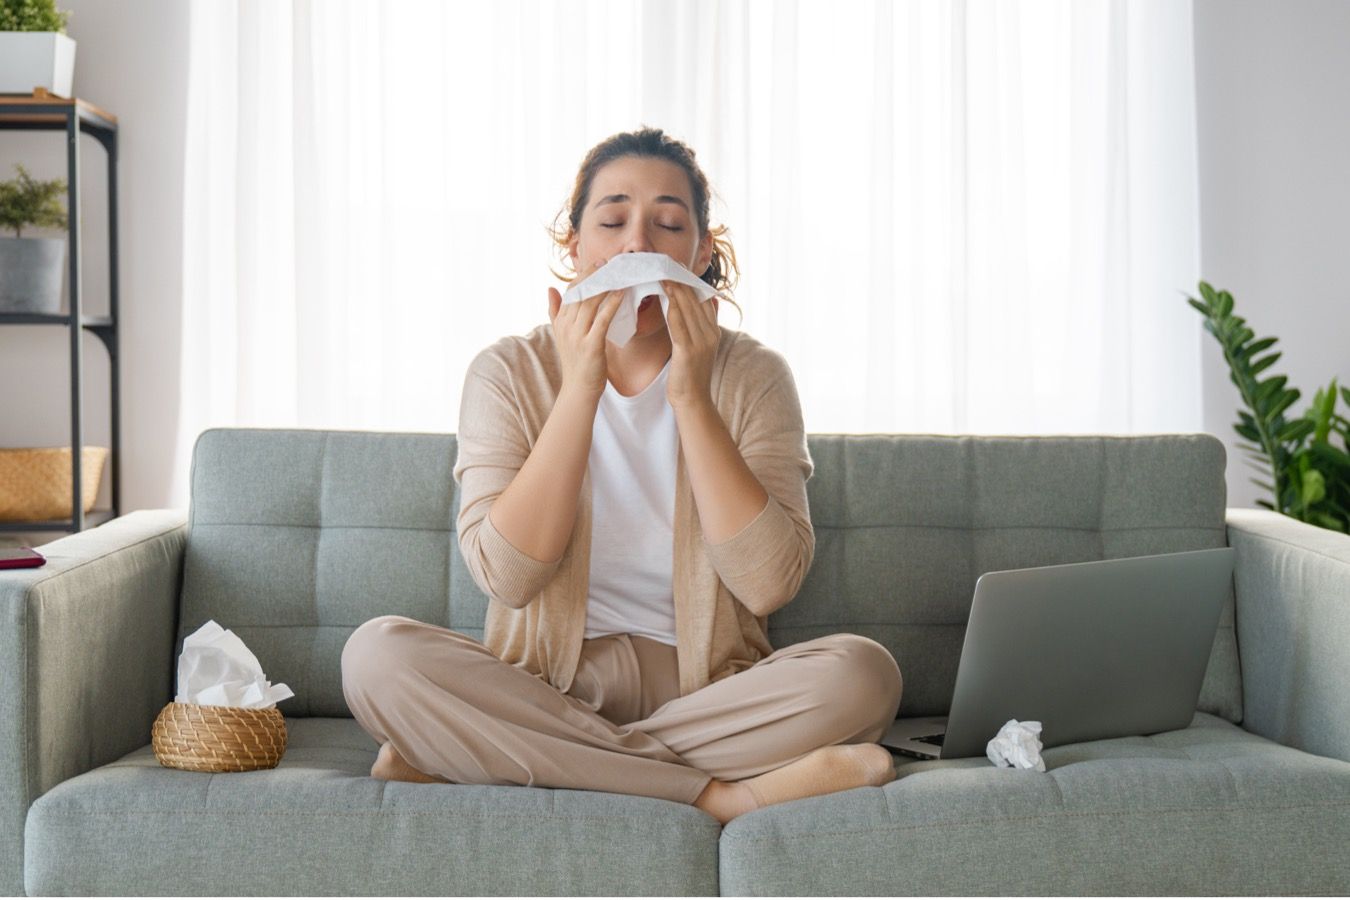 6 проверенных способов, помогающих чихнуть, когда не получается